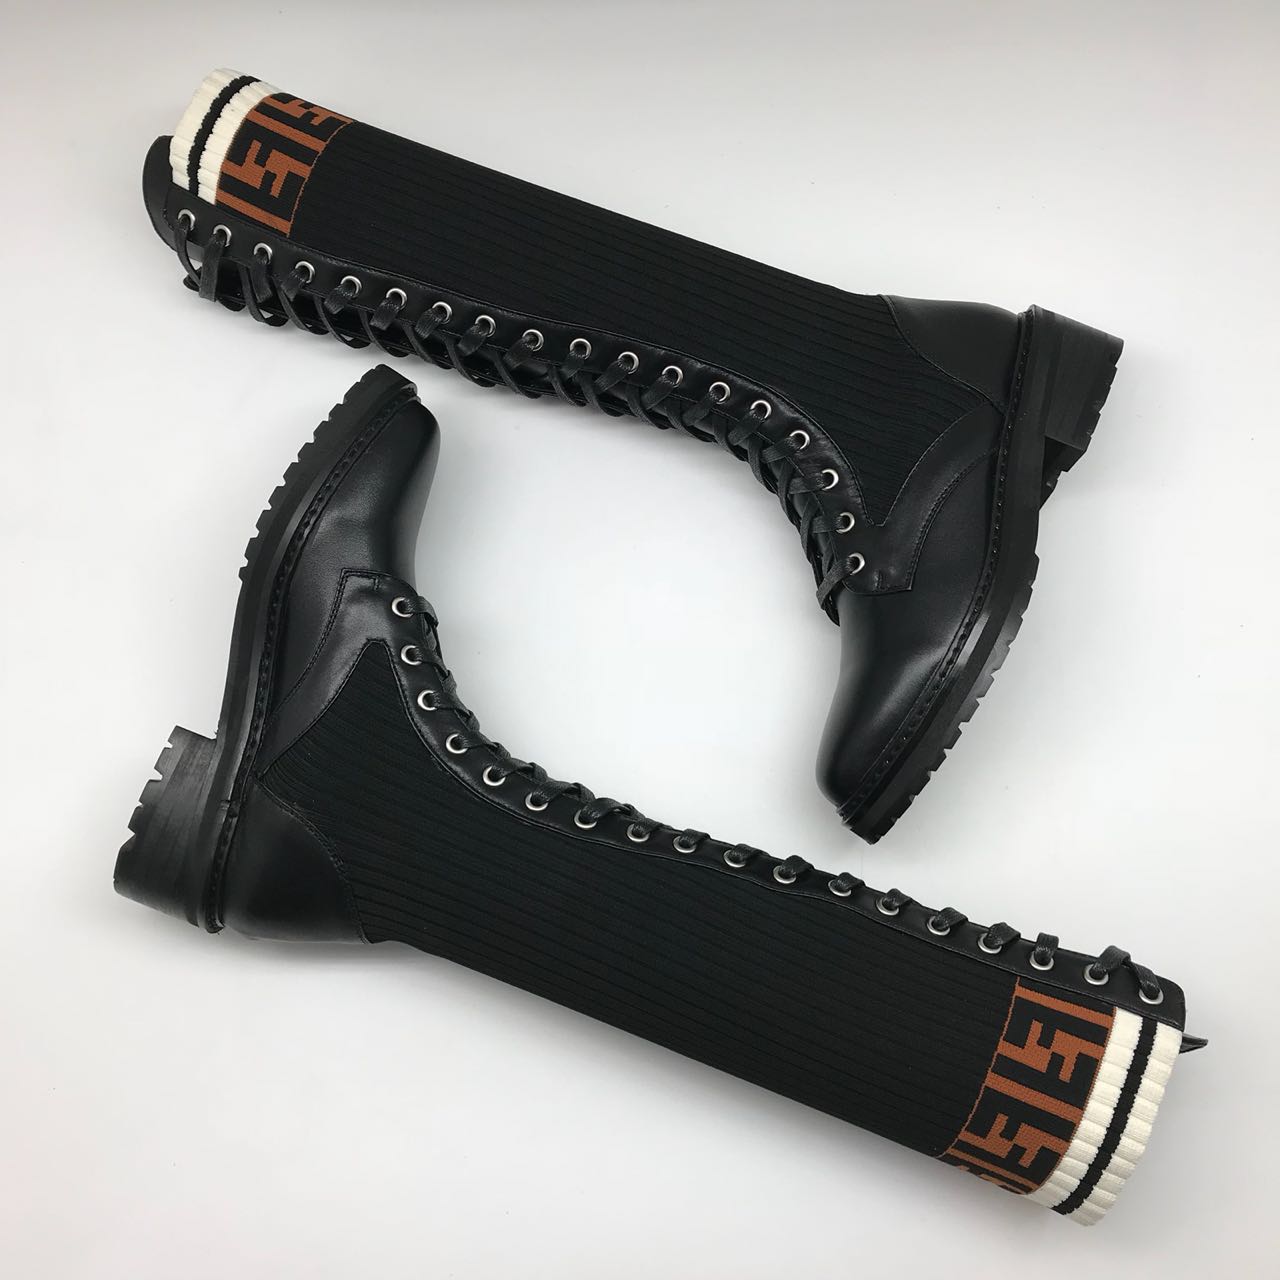 Женские высокие ботинки Fendi черные